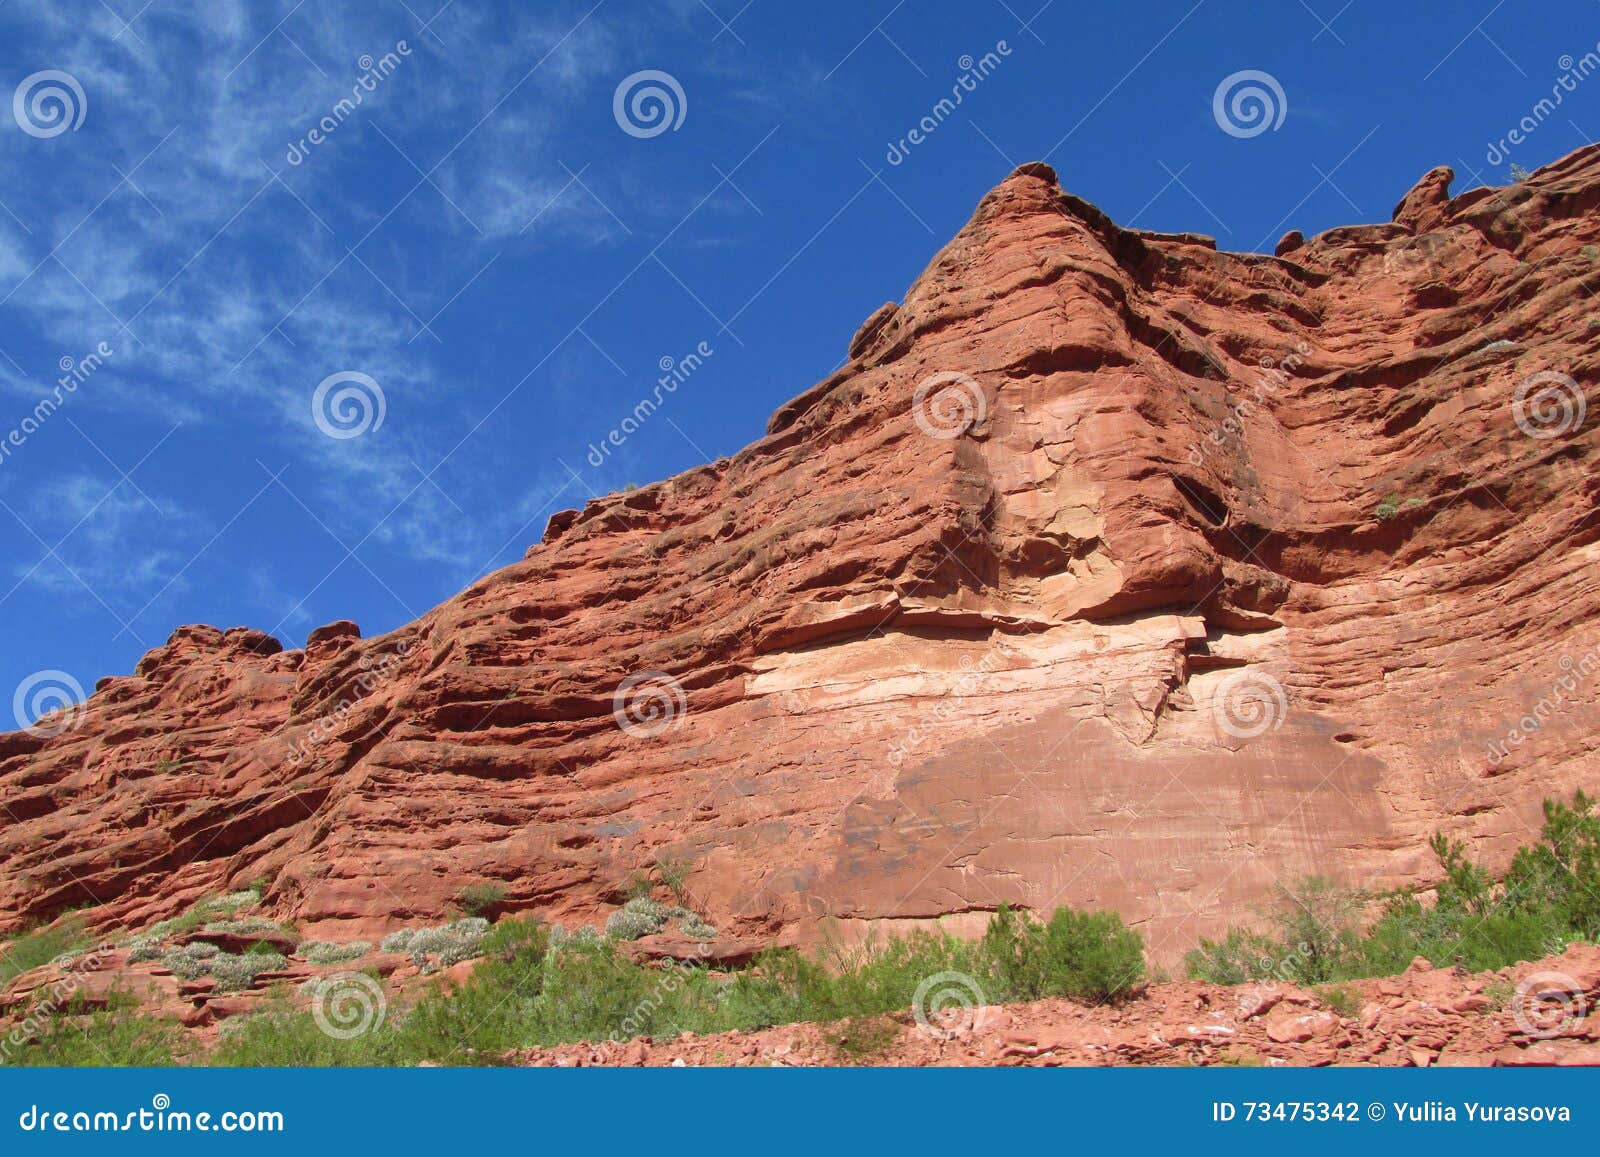 red colour rock landscape